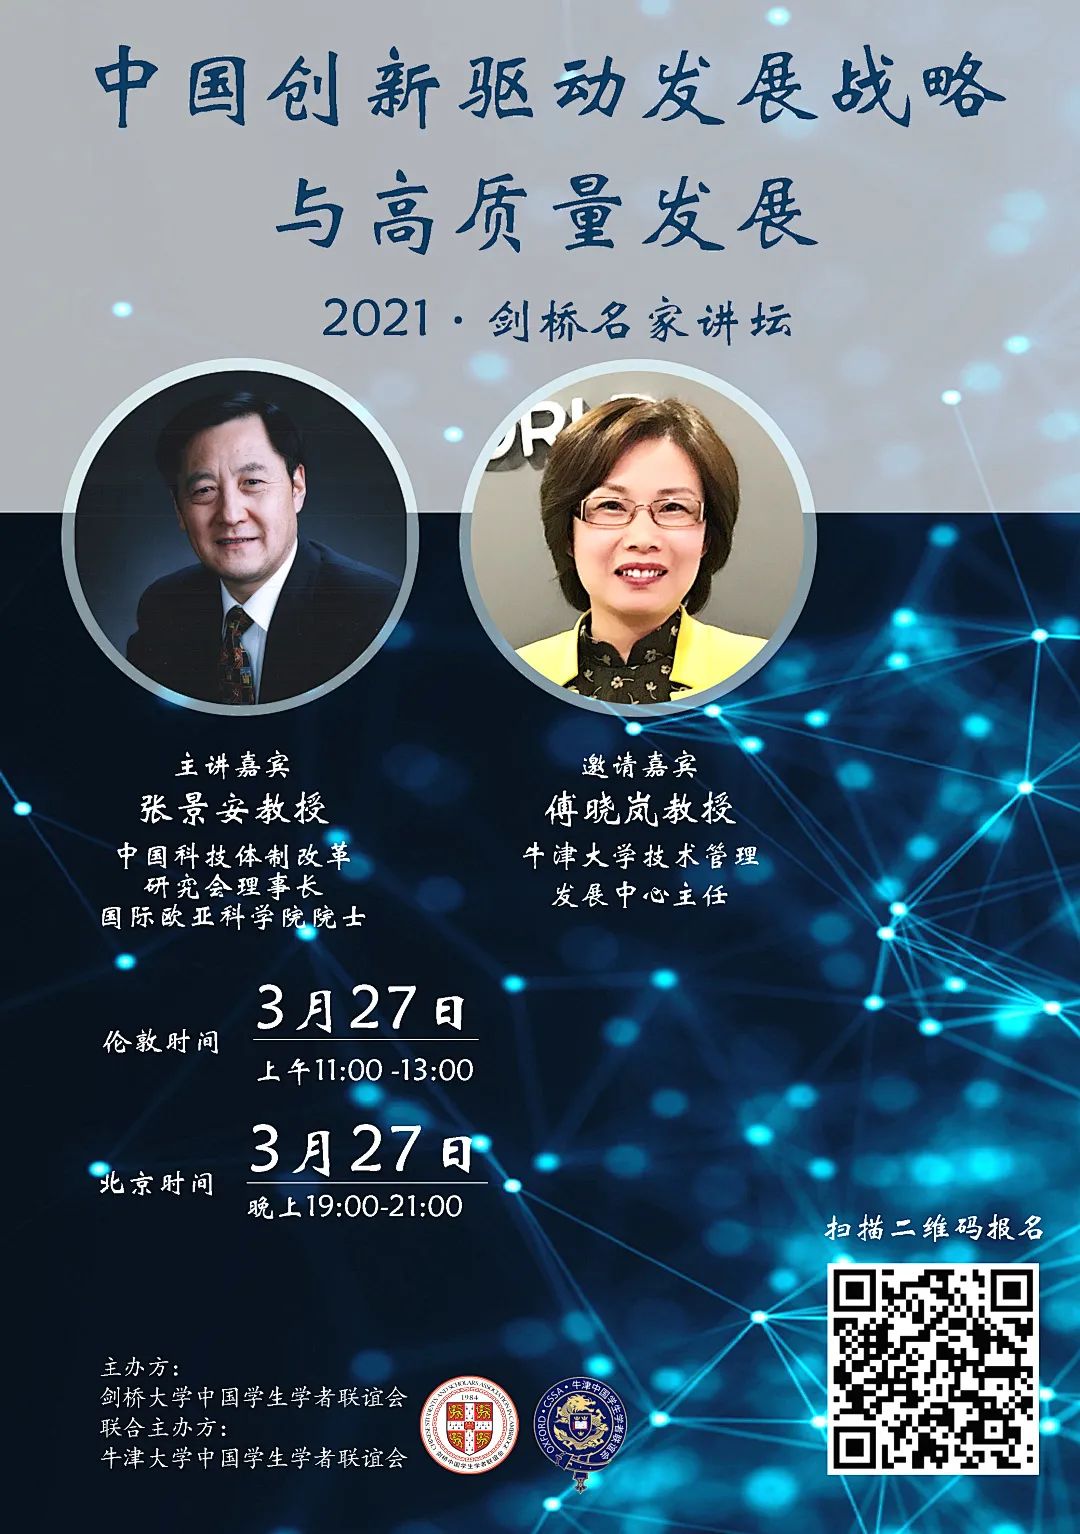 【学术文化部】2021年度“剑桥名家讲坛”中国创新驱动发展战略与高质量发展